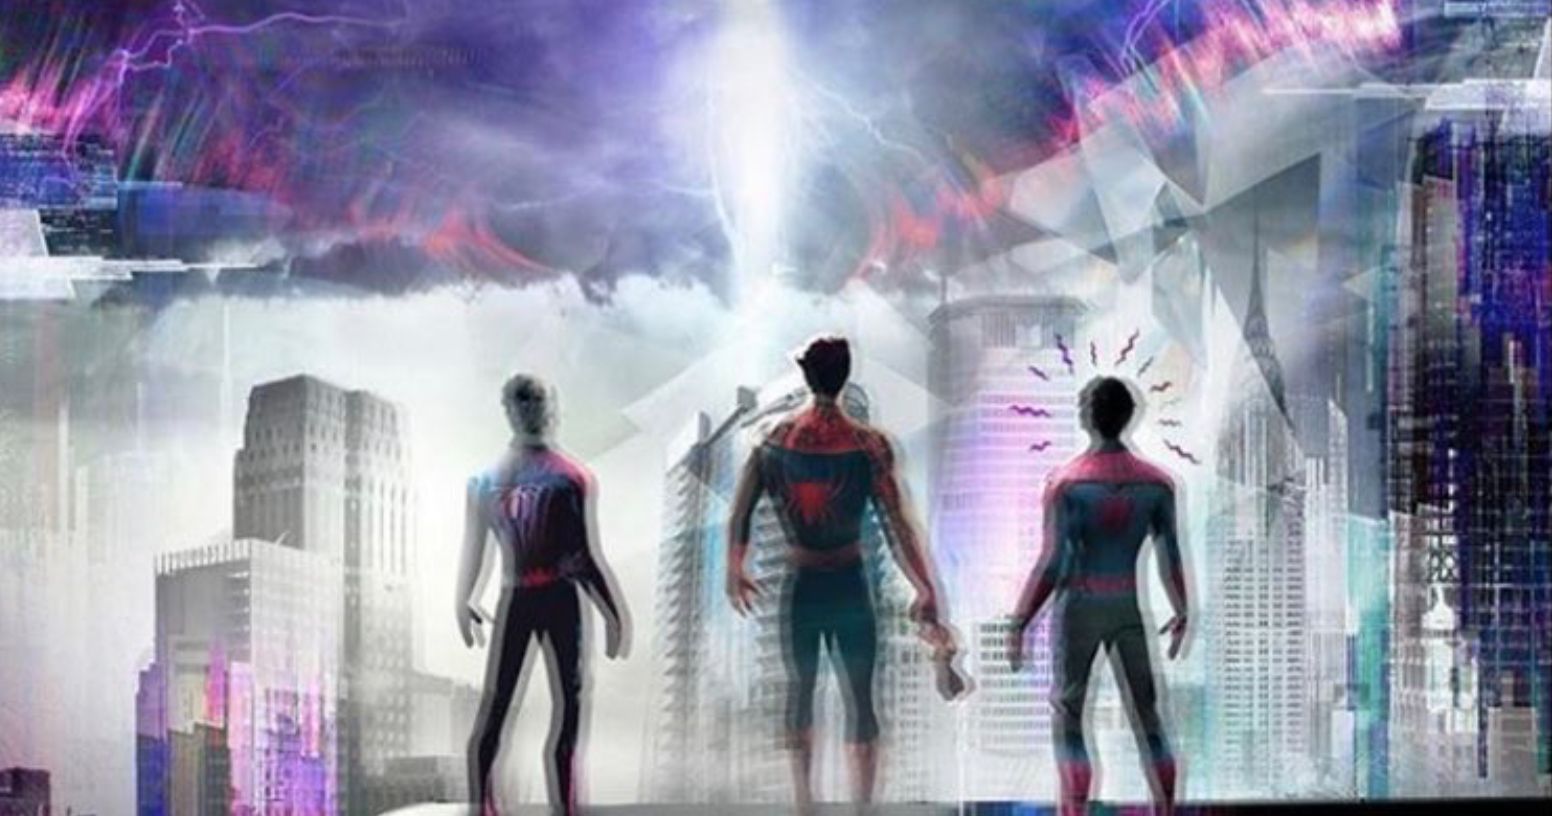 Will Spider-Man 3 Enter the Spider-Verse? Jamie Foxx Teases Multiple Spider-Men